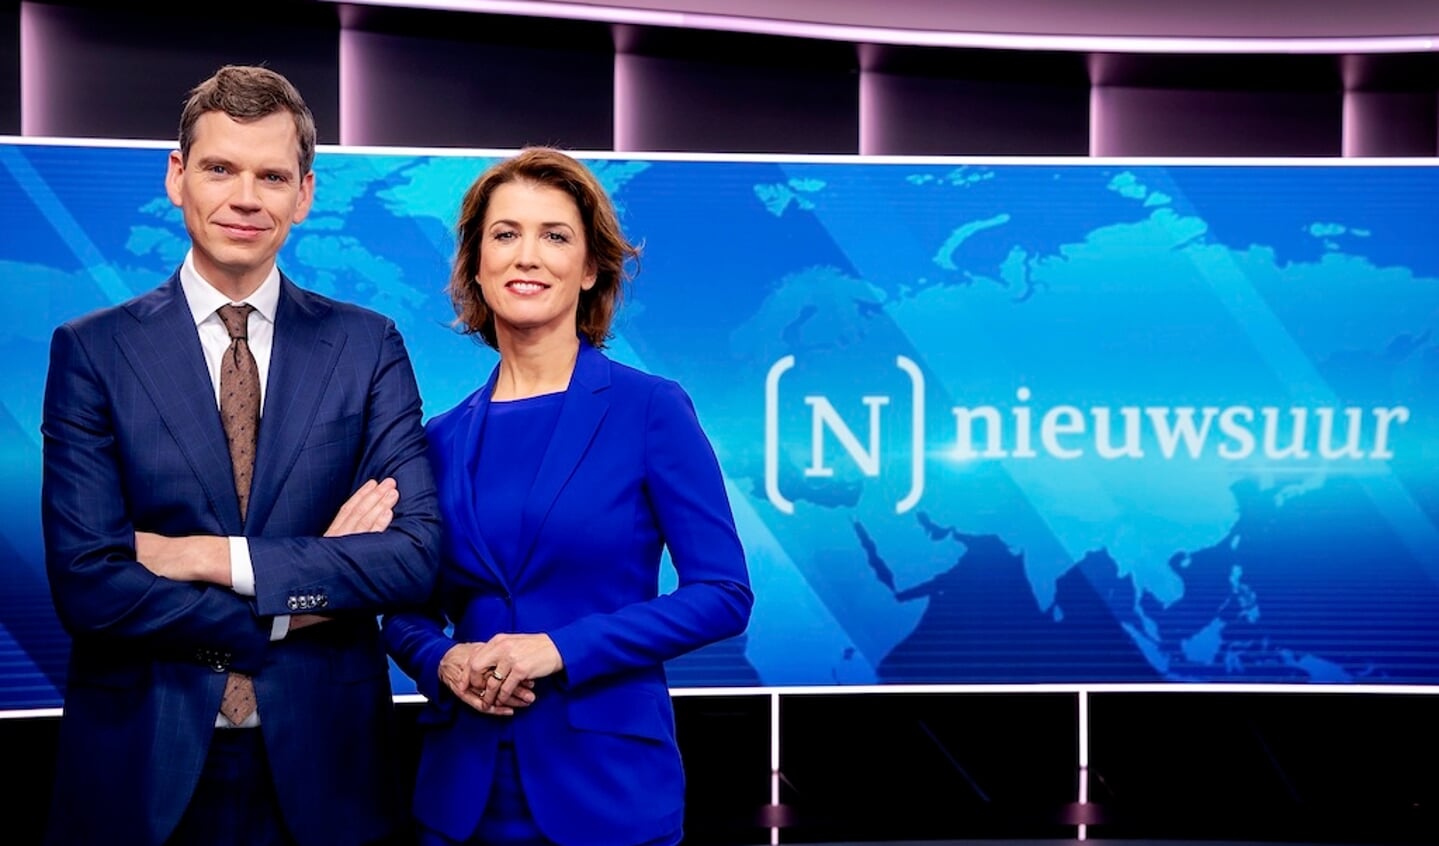 2019-11-04 13:56:05 HILVERSUM - Nieuwsuur presentatoren Marielle Tweebeeke en Jeroen Wollaars. ANP ROBIN VAN LONKHUIJSEN